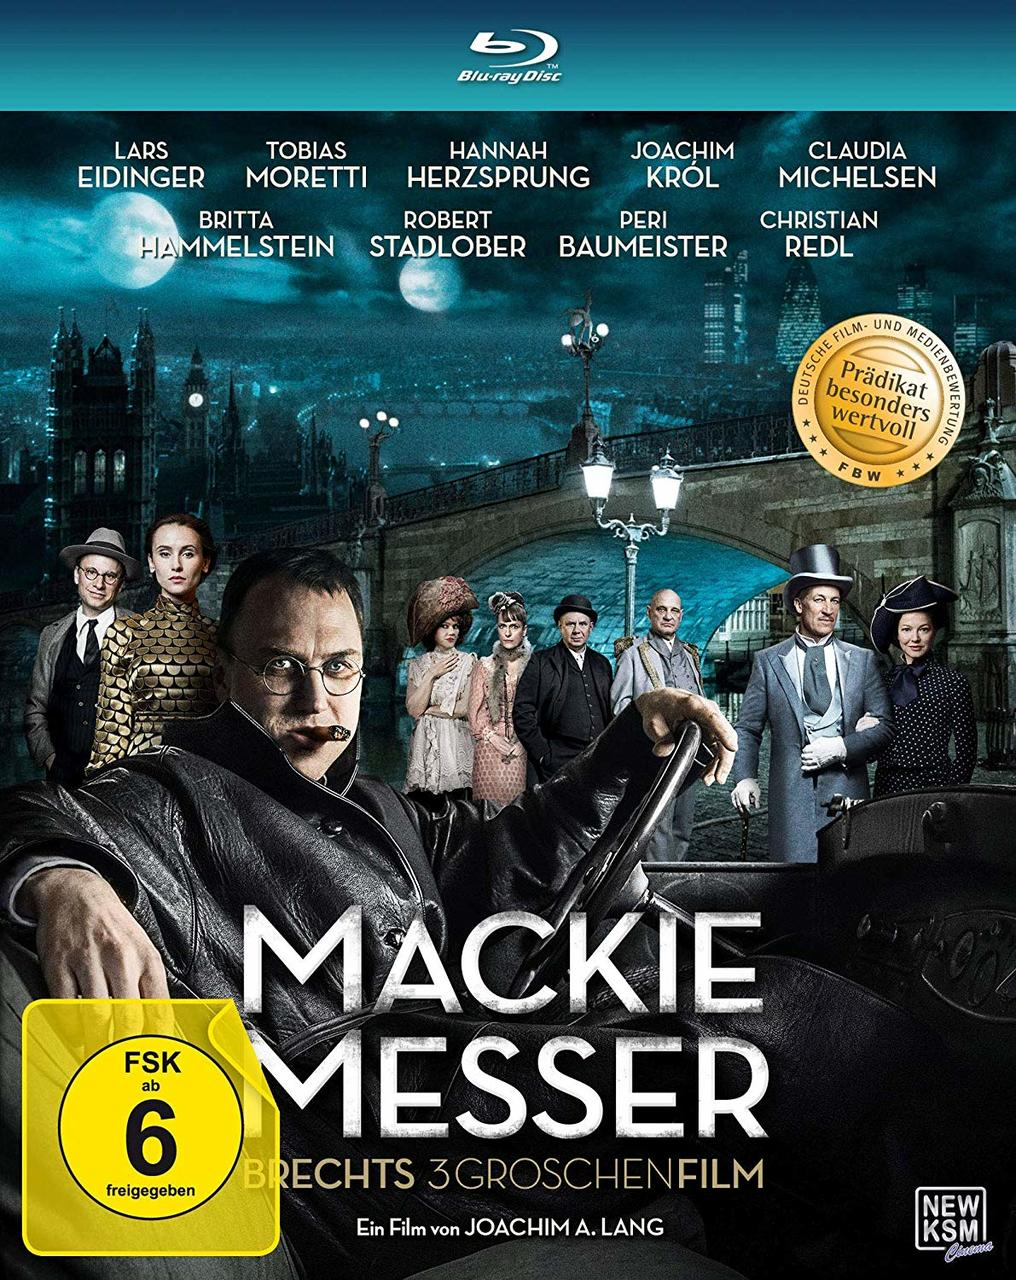 Messer-Brechts Mackie Blu-ray Dreigroschenfilm